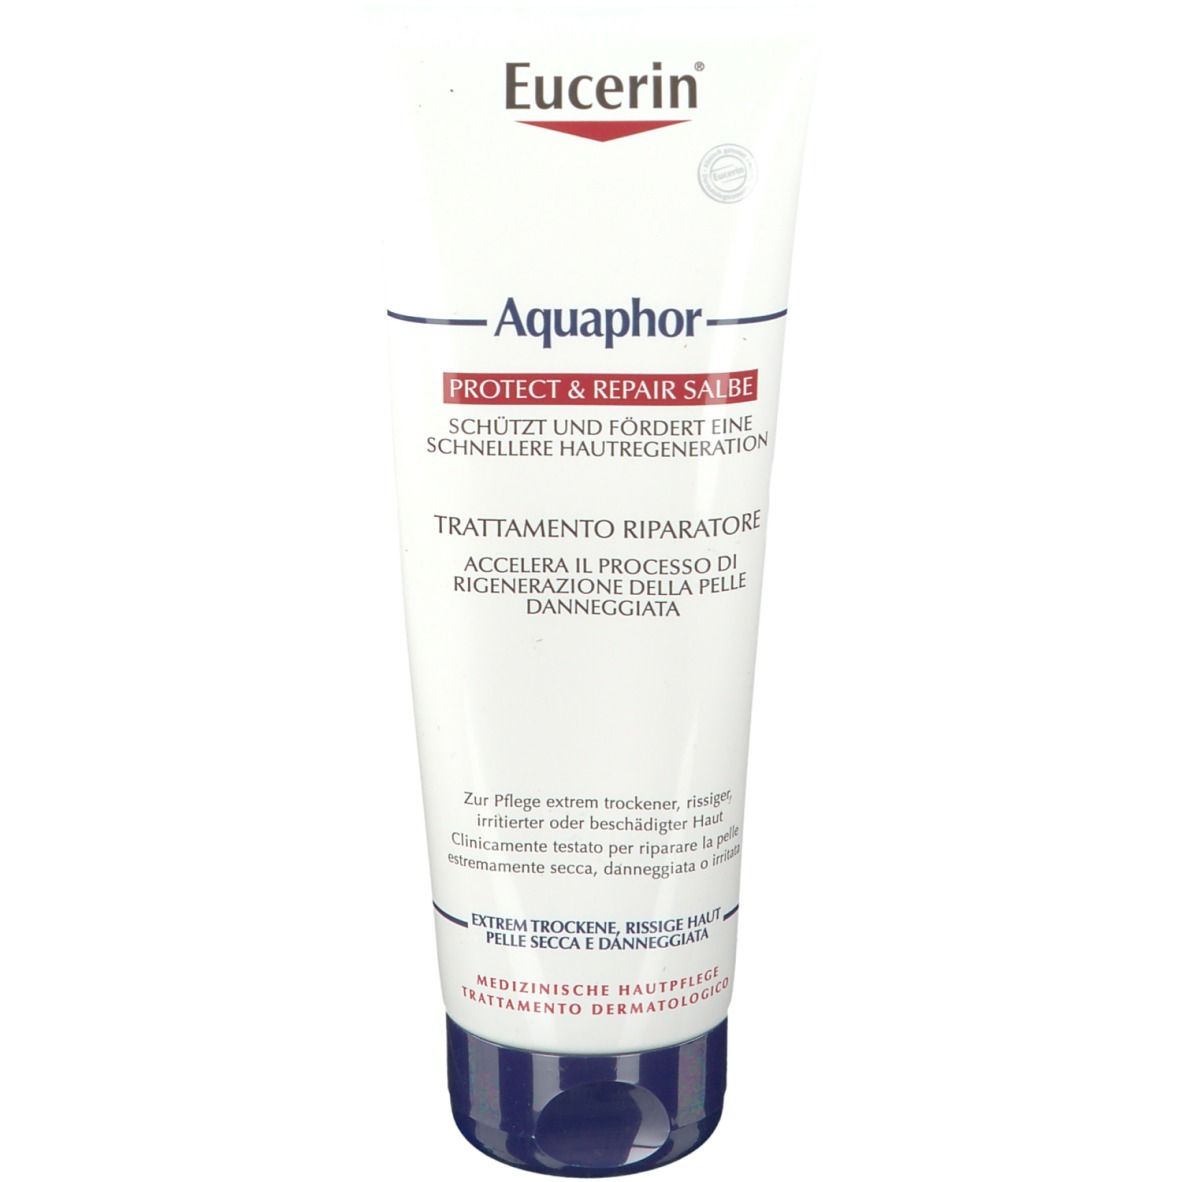 Image of Eucerin® Aquaphor Protect & Repair Salbe